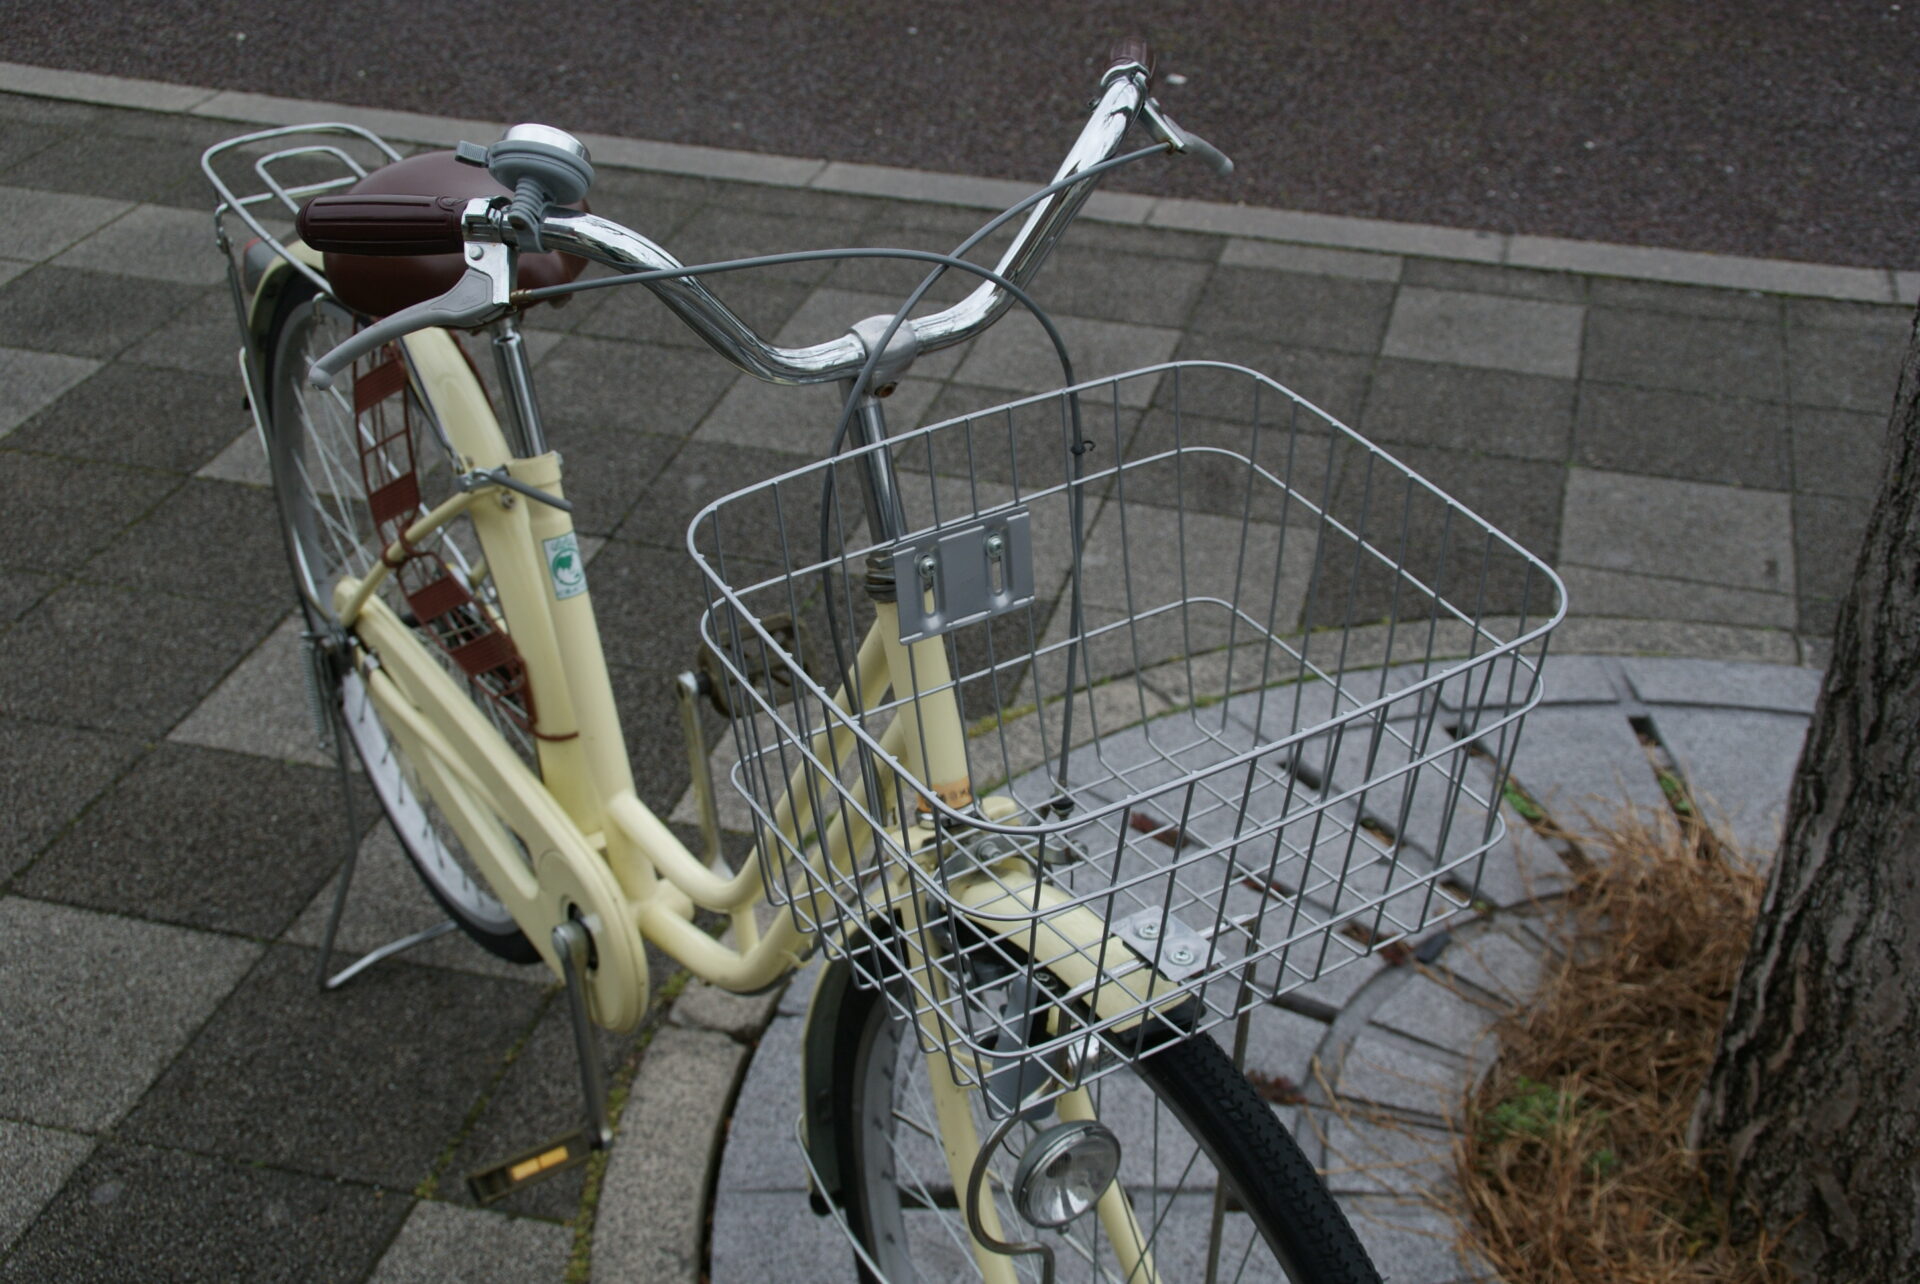 【お買い物にちょうどいい一台です】中古自転車のご紹介。 - 京都の中古自転車・新車販売 サイクルショップ エイリン